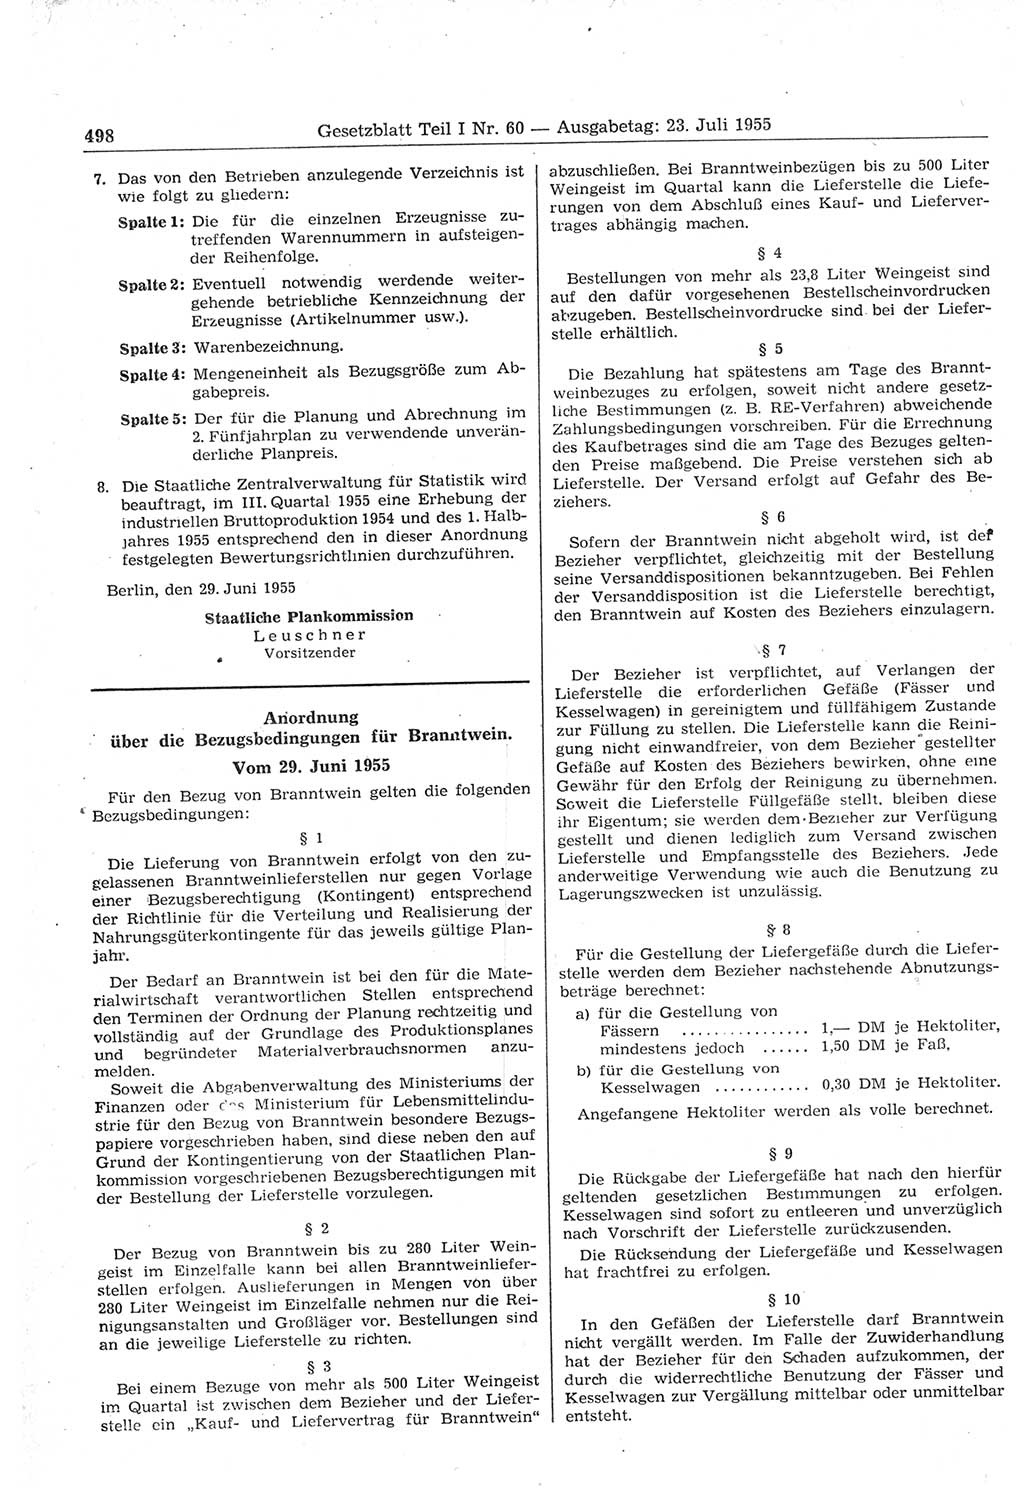 Gesetzblatt (GBl.) der Deutschen Demokratischen Republik (DDR) Teil Ⅰ 1955, Seite 498 (GBl. DDR Ⅰ 1955, S. 498)